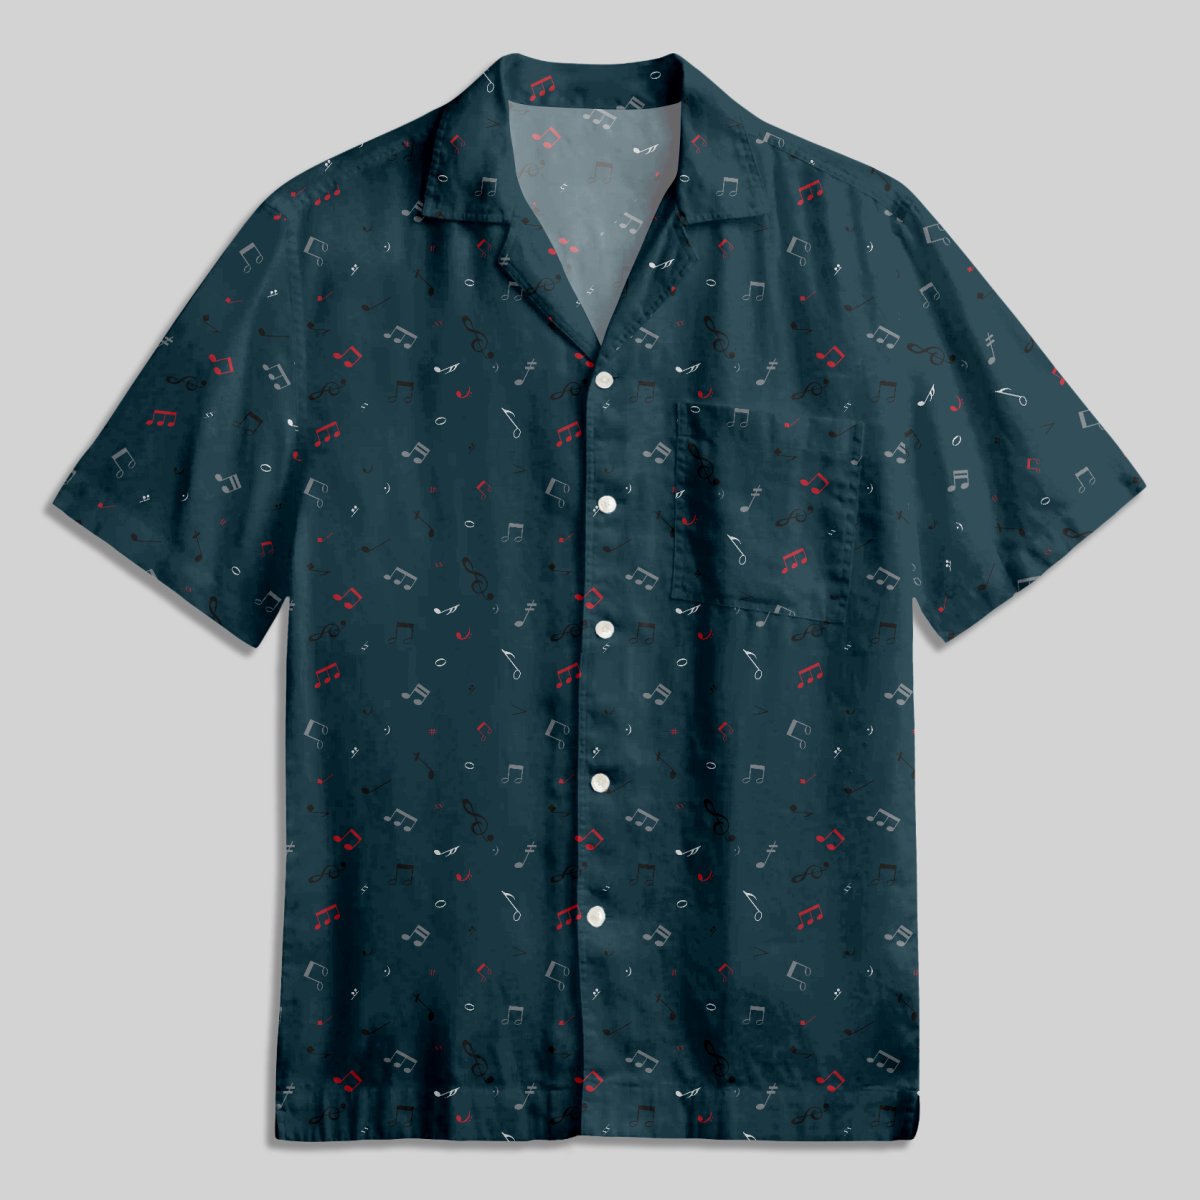 Music Button Up Pocket Shirt - Geeksoutfit